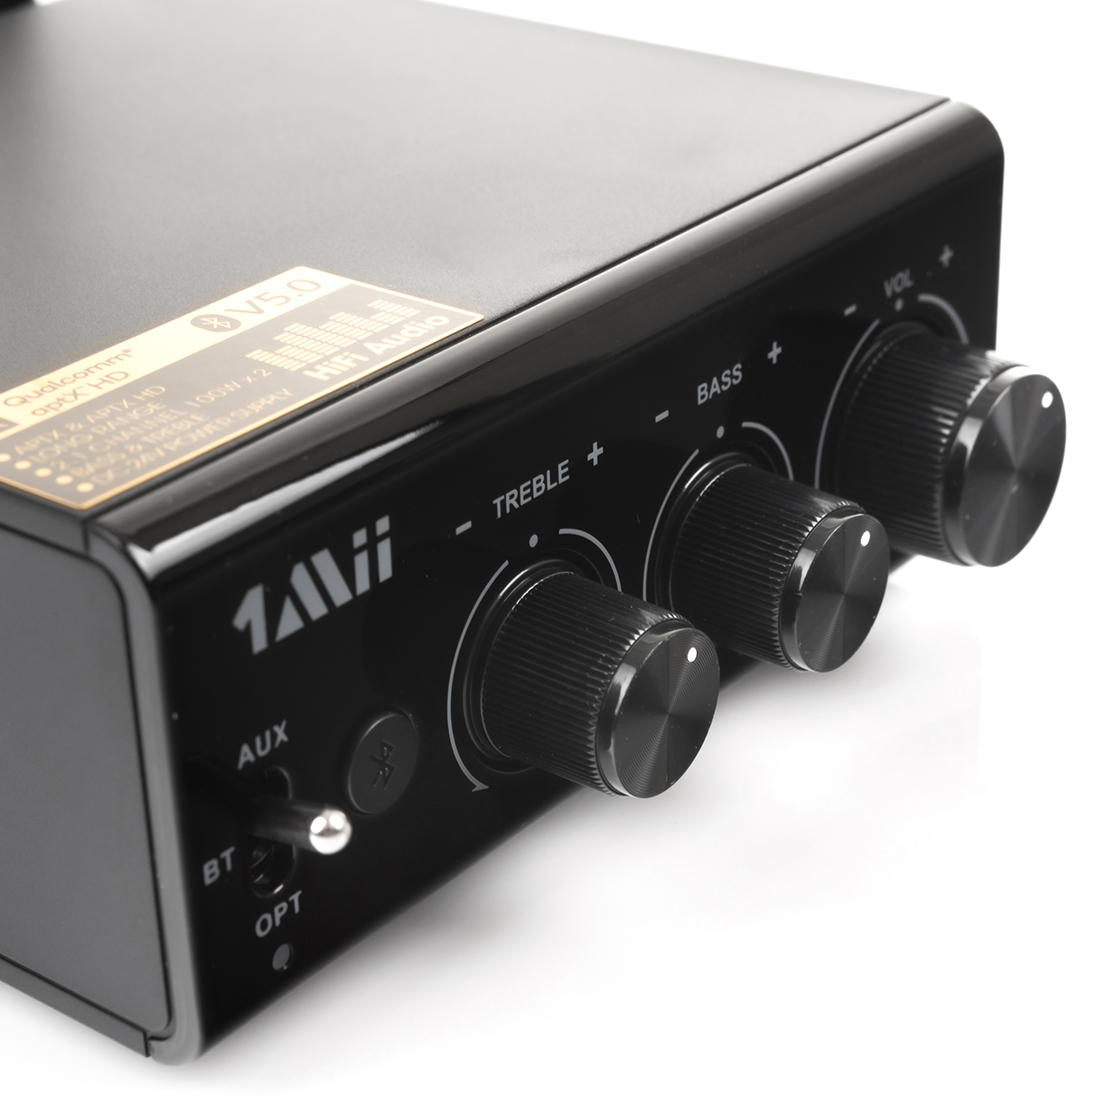 Audio Bluetooth 5.0 Receiver for Hi-Fi 1Mii B08+ aptX HD